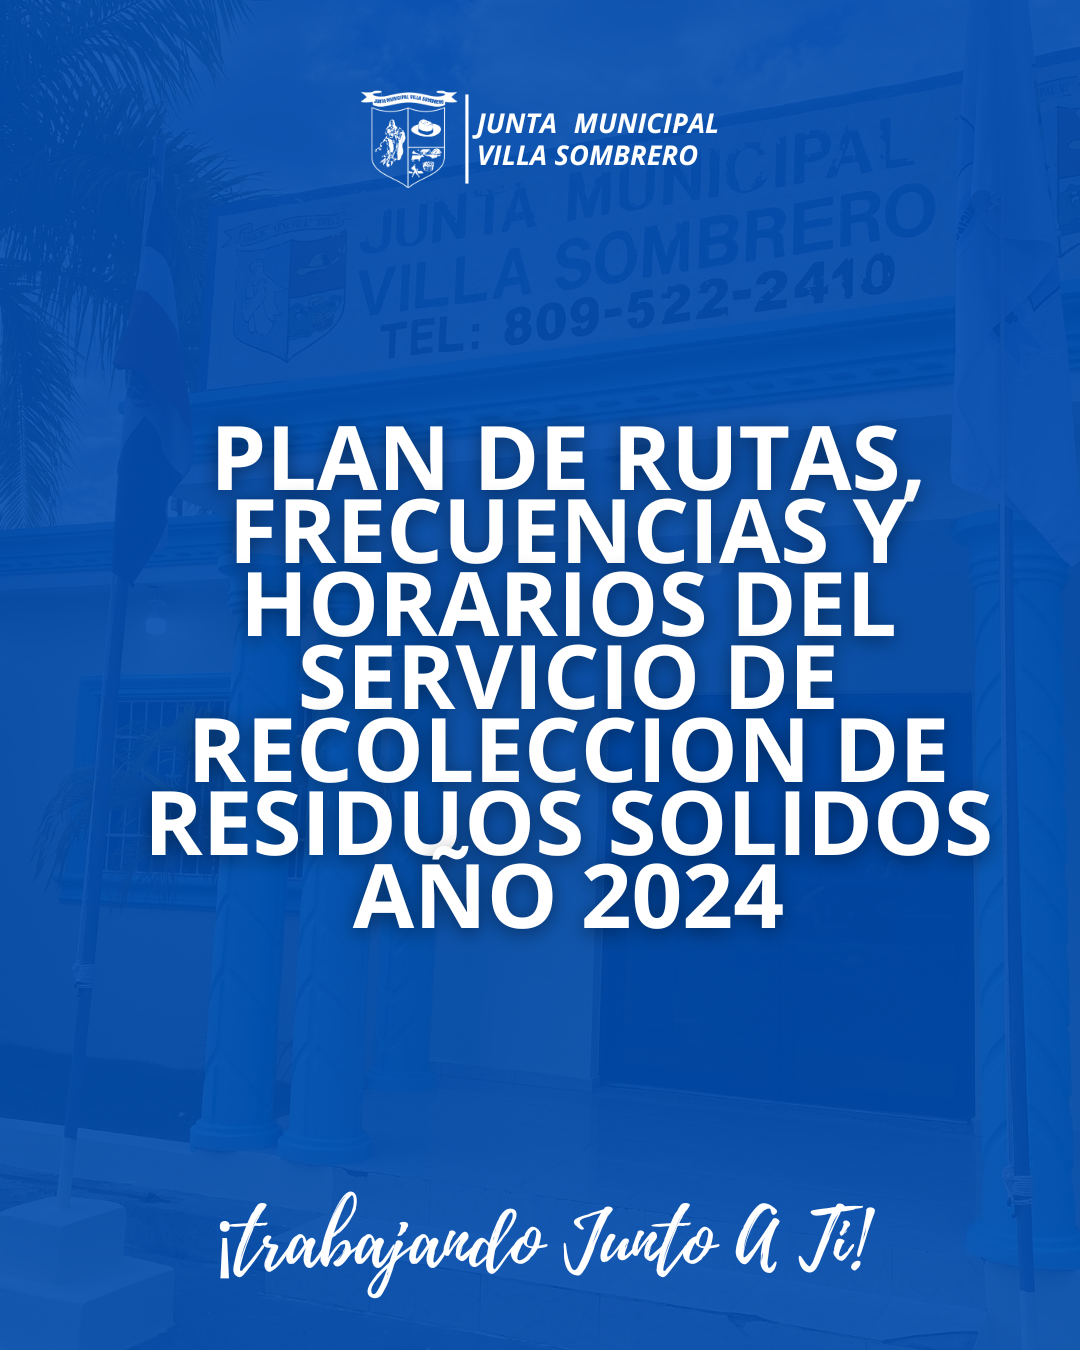 PLAN DE RUTAS, FRECUENCIAS Y HORARIOS DEL SERVICIO DE RECOLECCION DE RESIDUOS SOLIDOS AÑO 2024